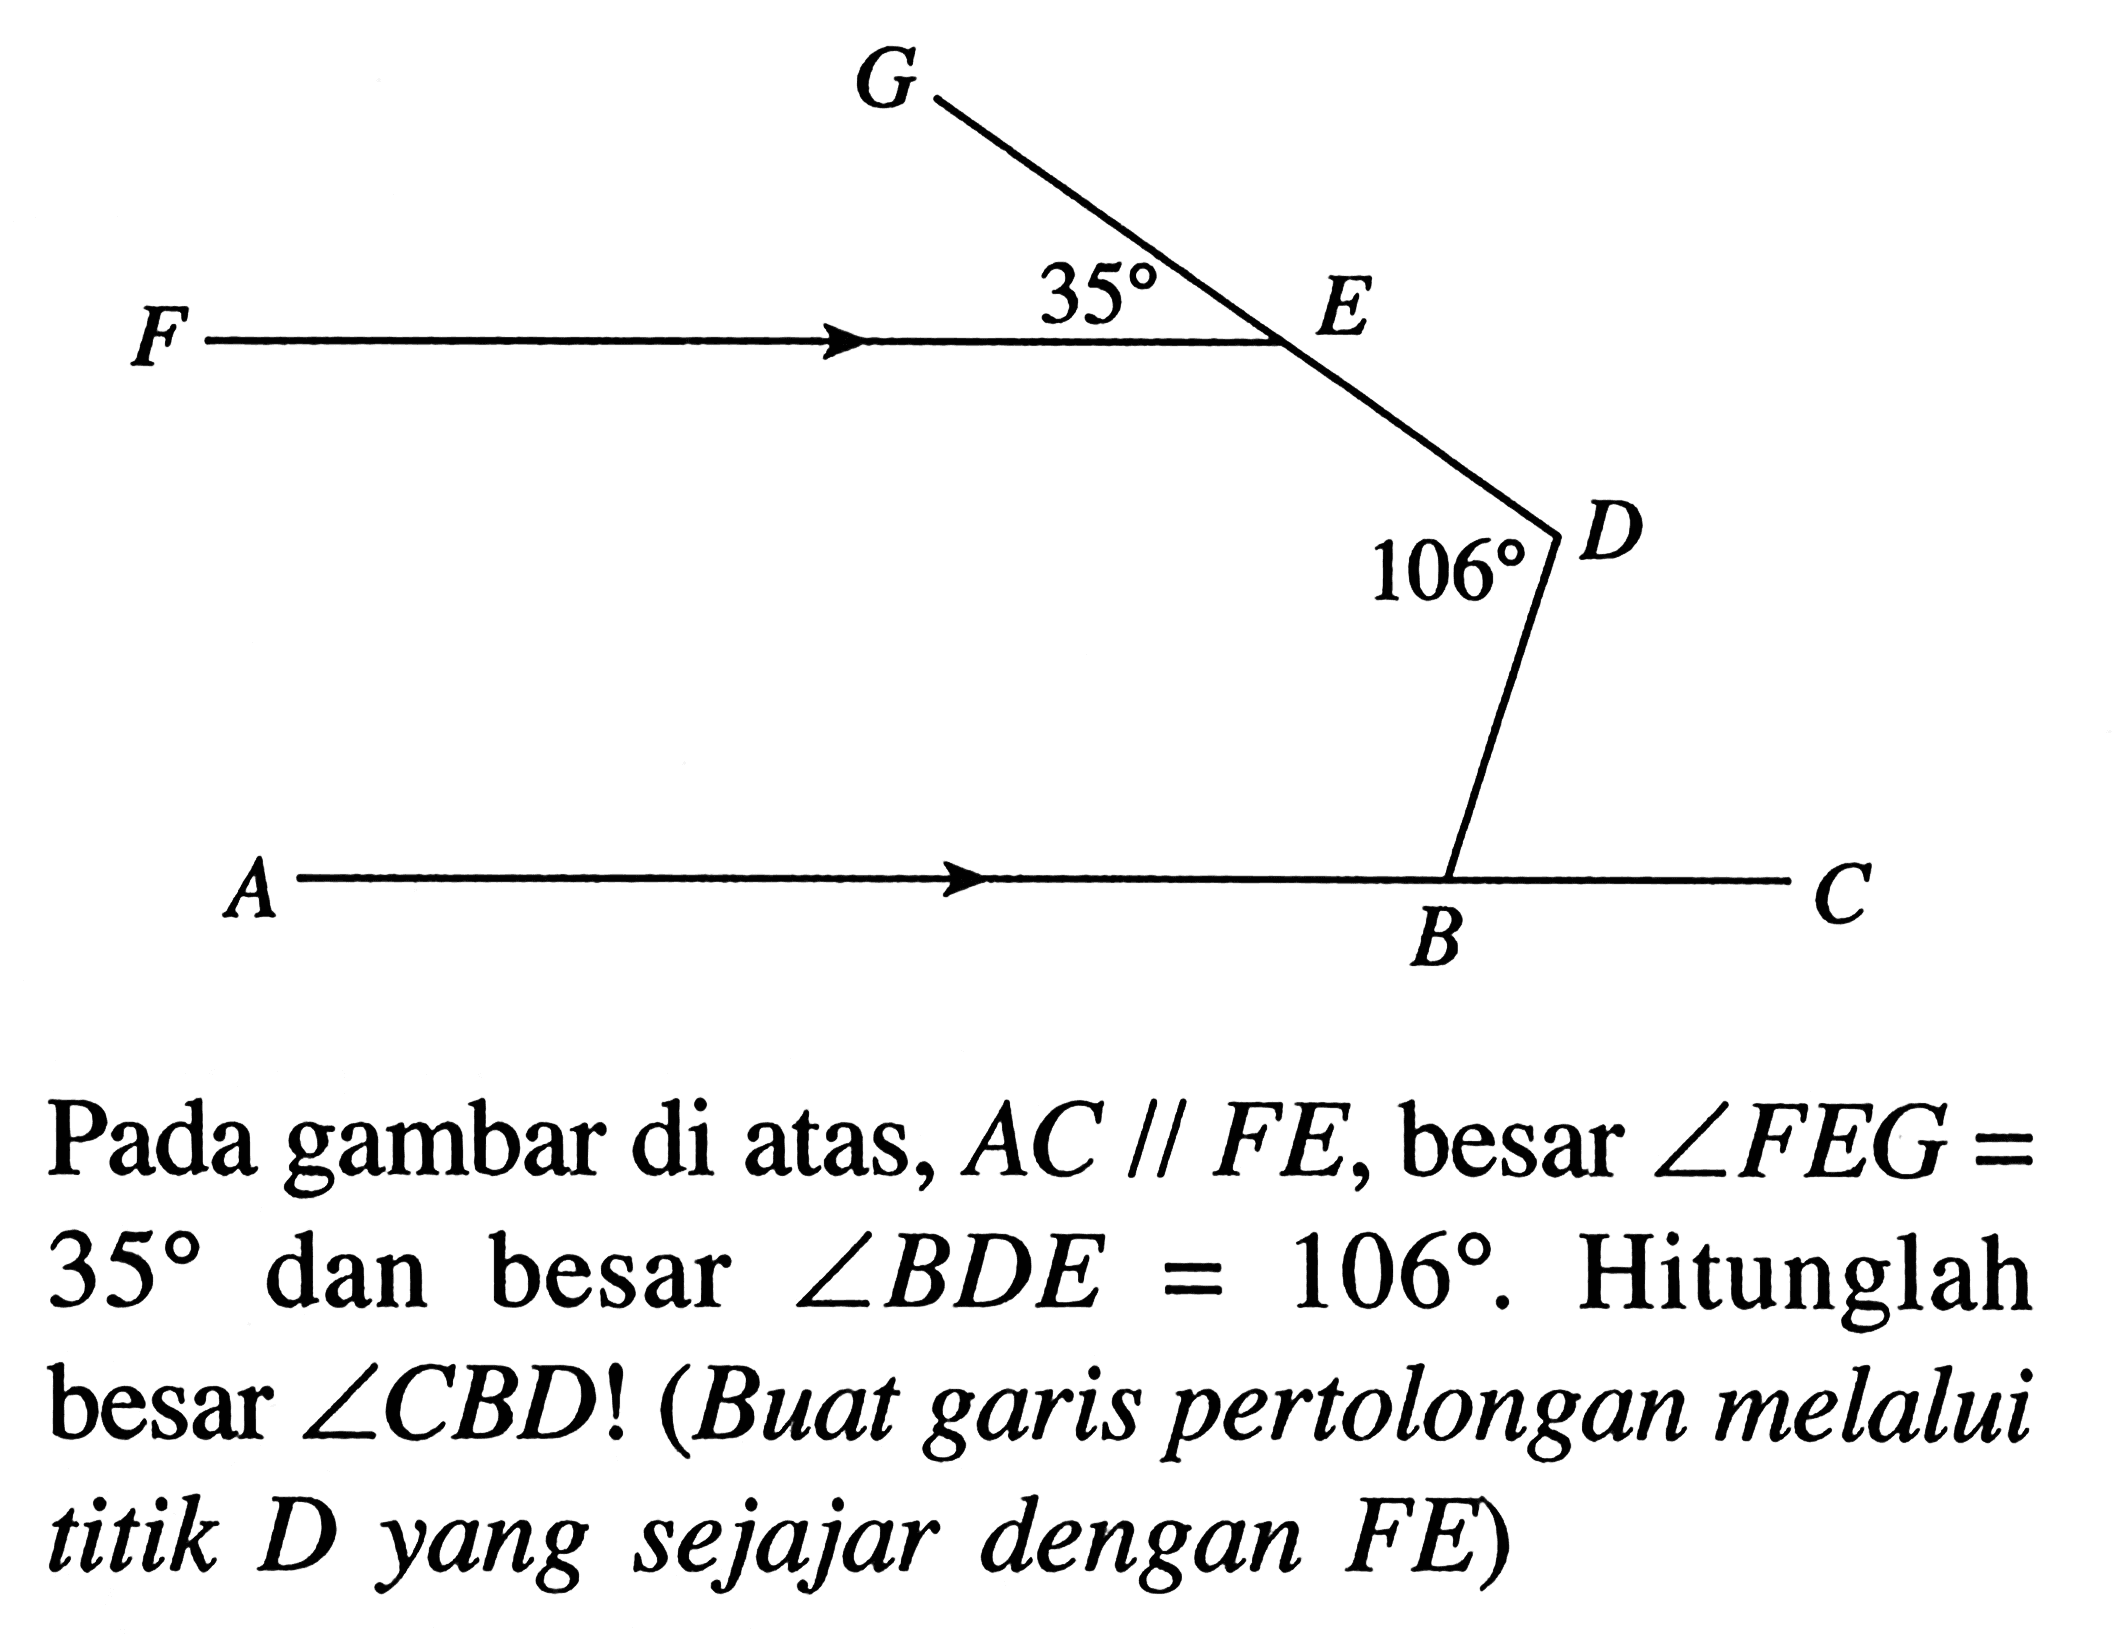 Pada gambar di atas, AC// FE, besar sudut FEG=35 dan besar sudut BDE=106. Hitunglah besar sudut CBD! (Buat garis pertolongan melalui titik D yang sejajar dengan FE) F G 35 E 106 D A B C 